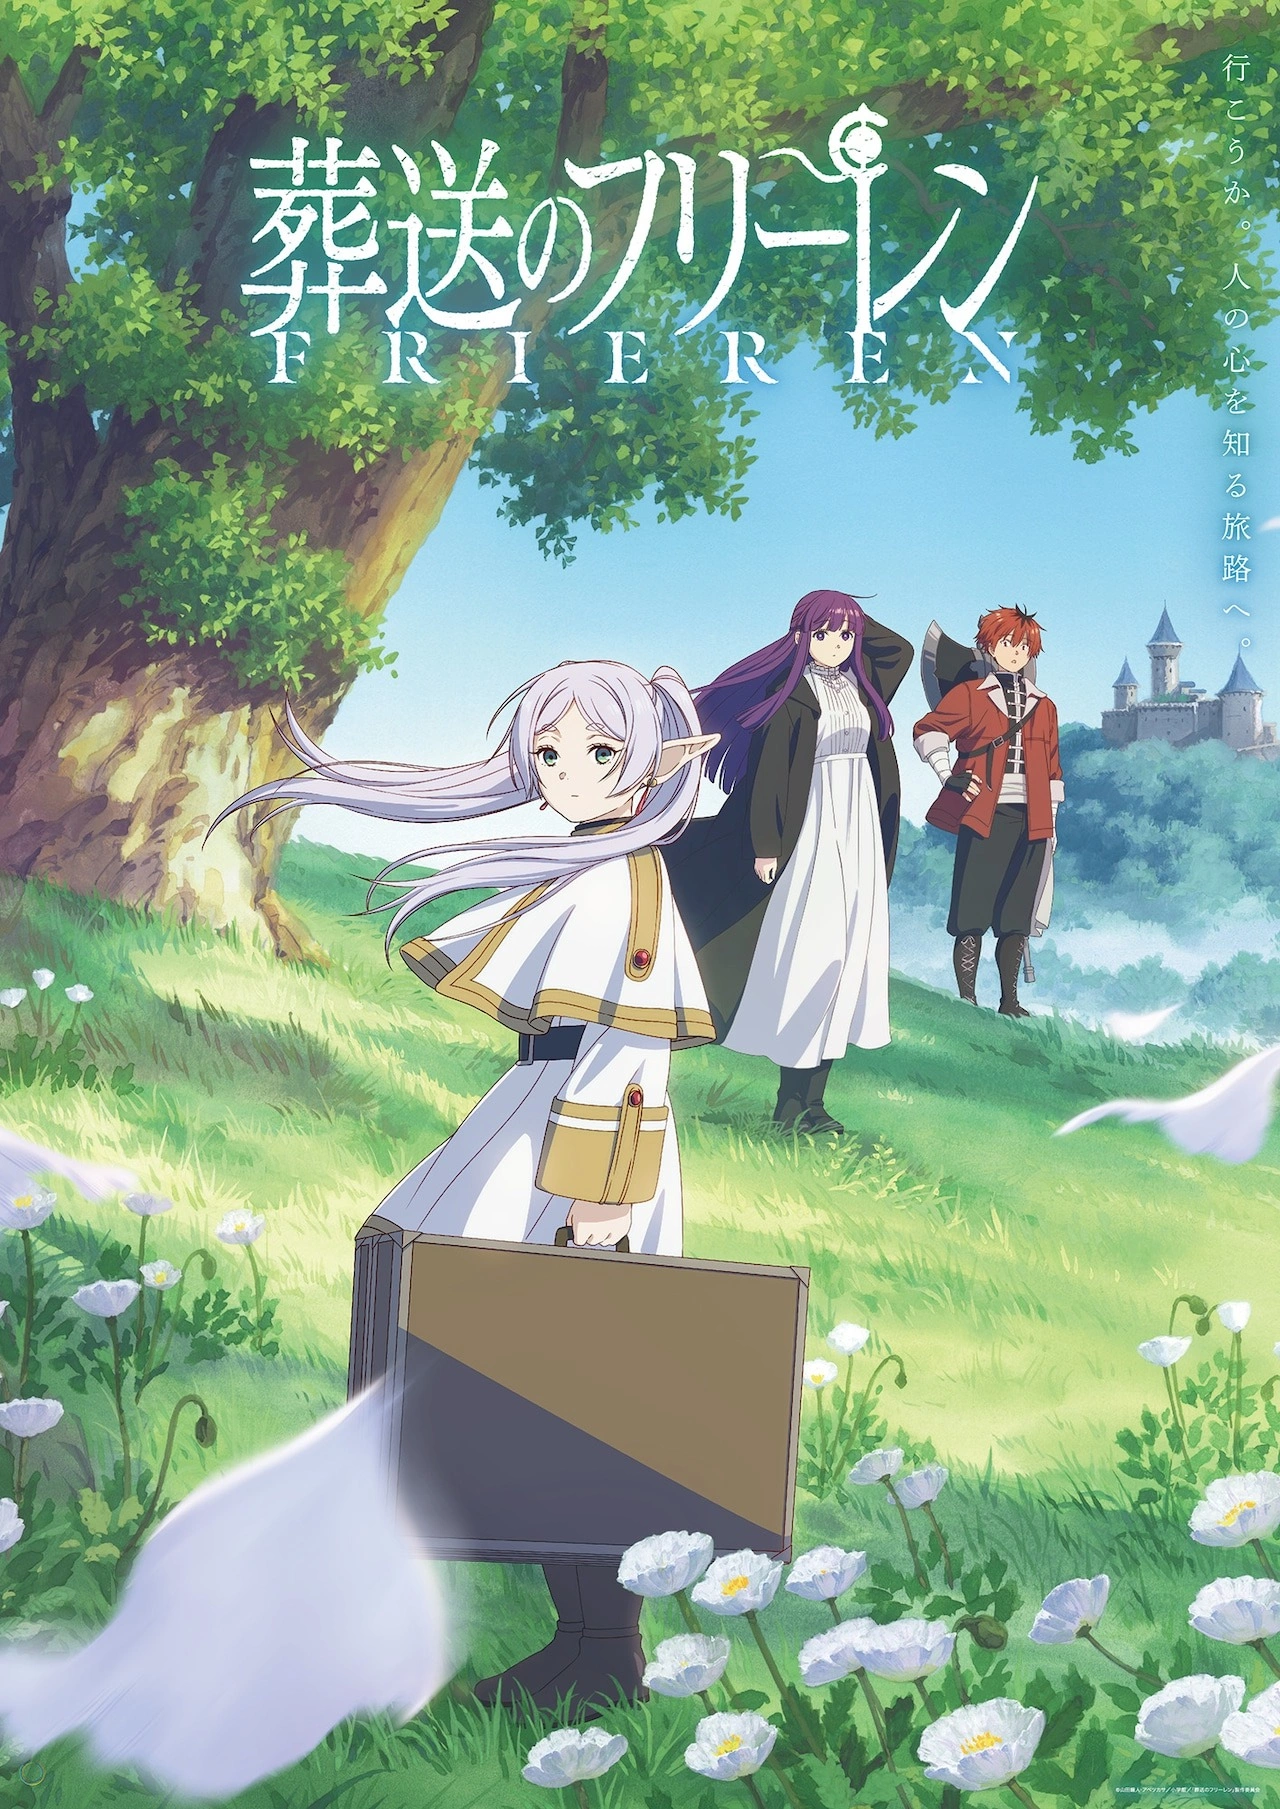 Imagem promocional da série anime takt:op